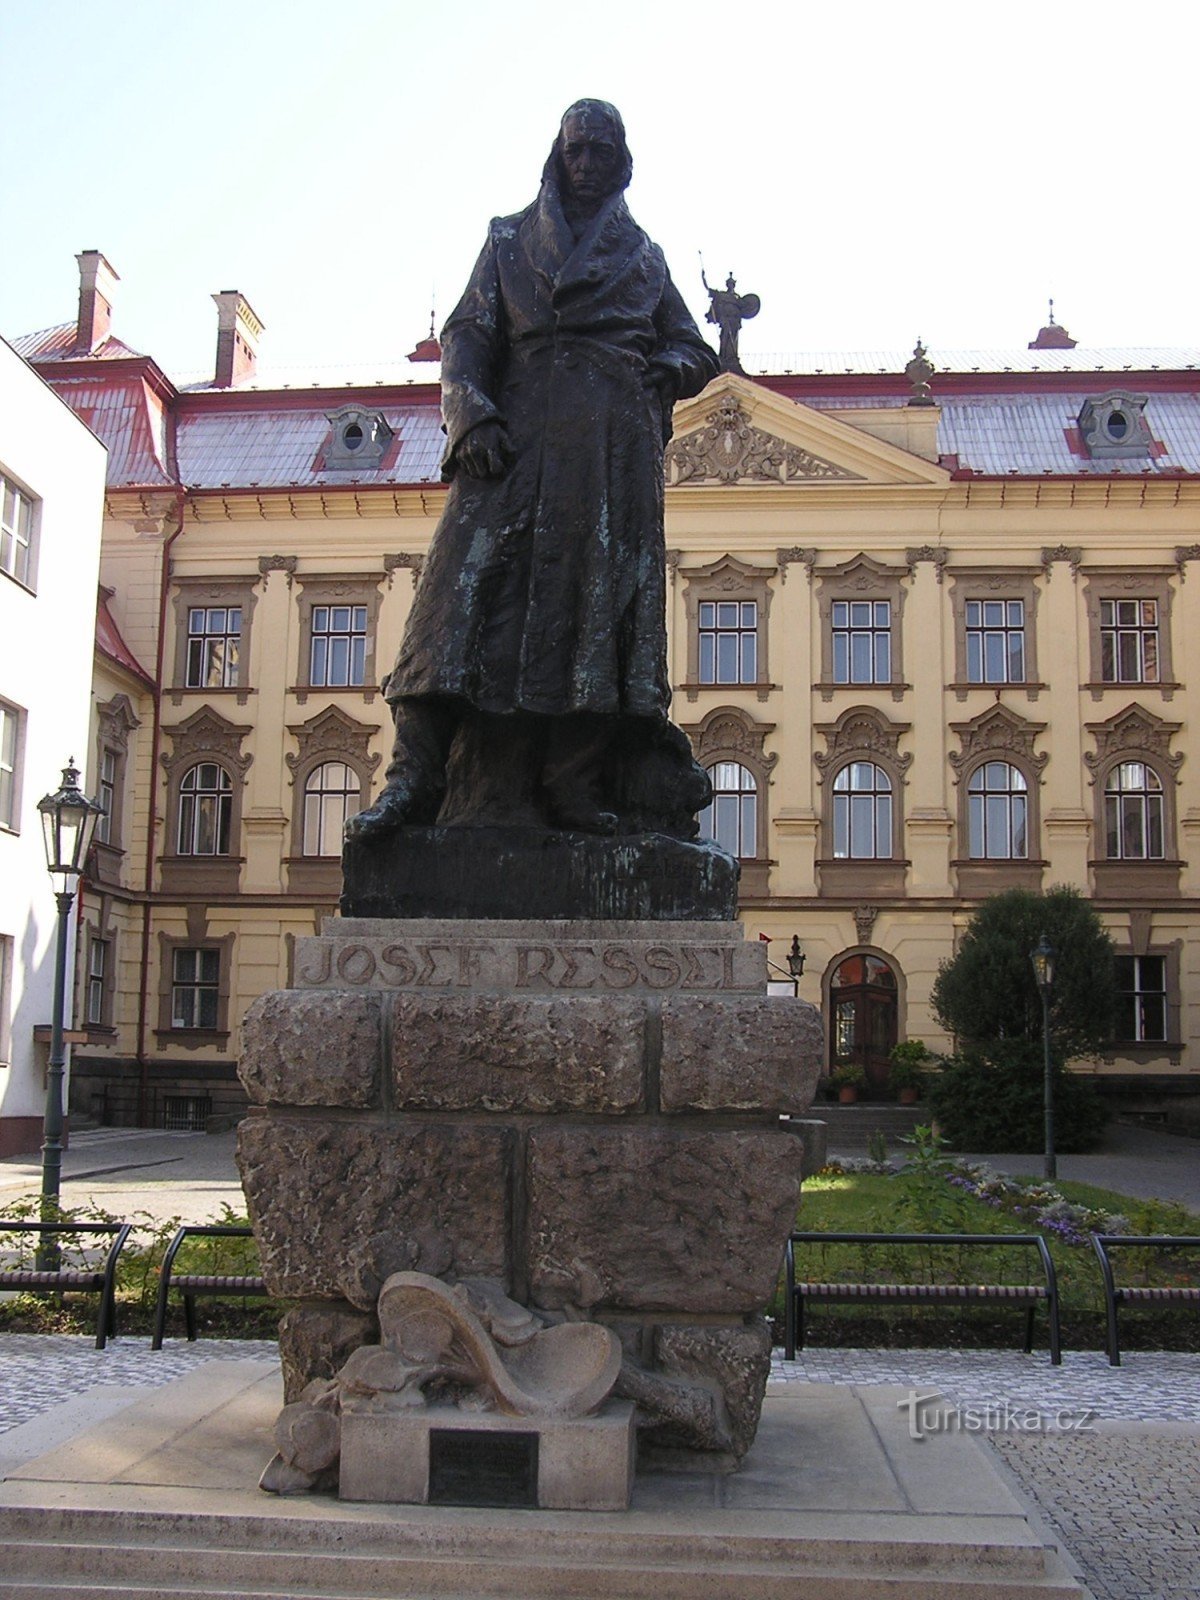 standbeeld van Josef Ressel